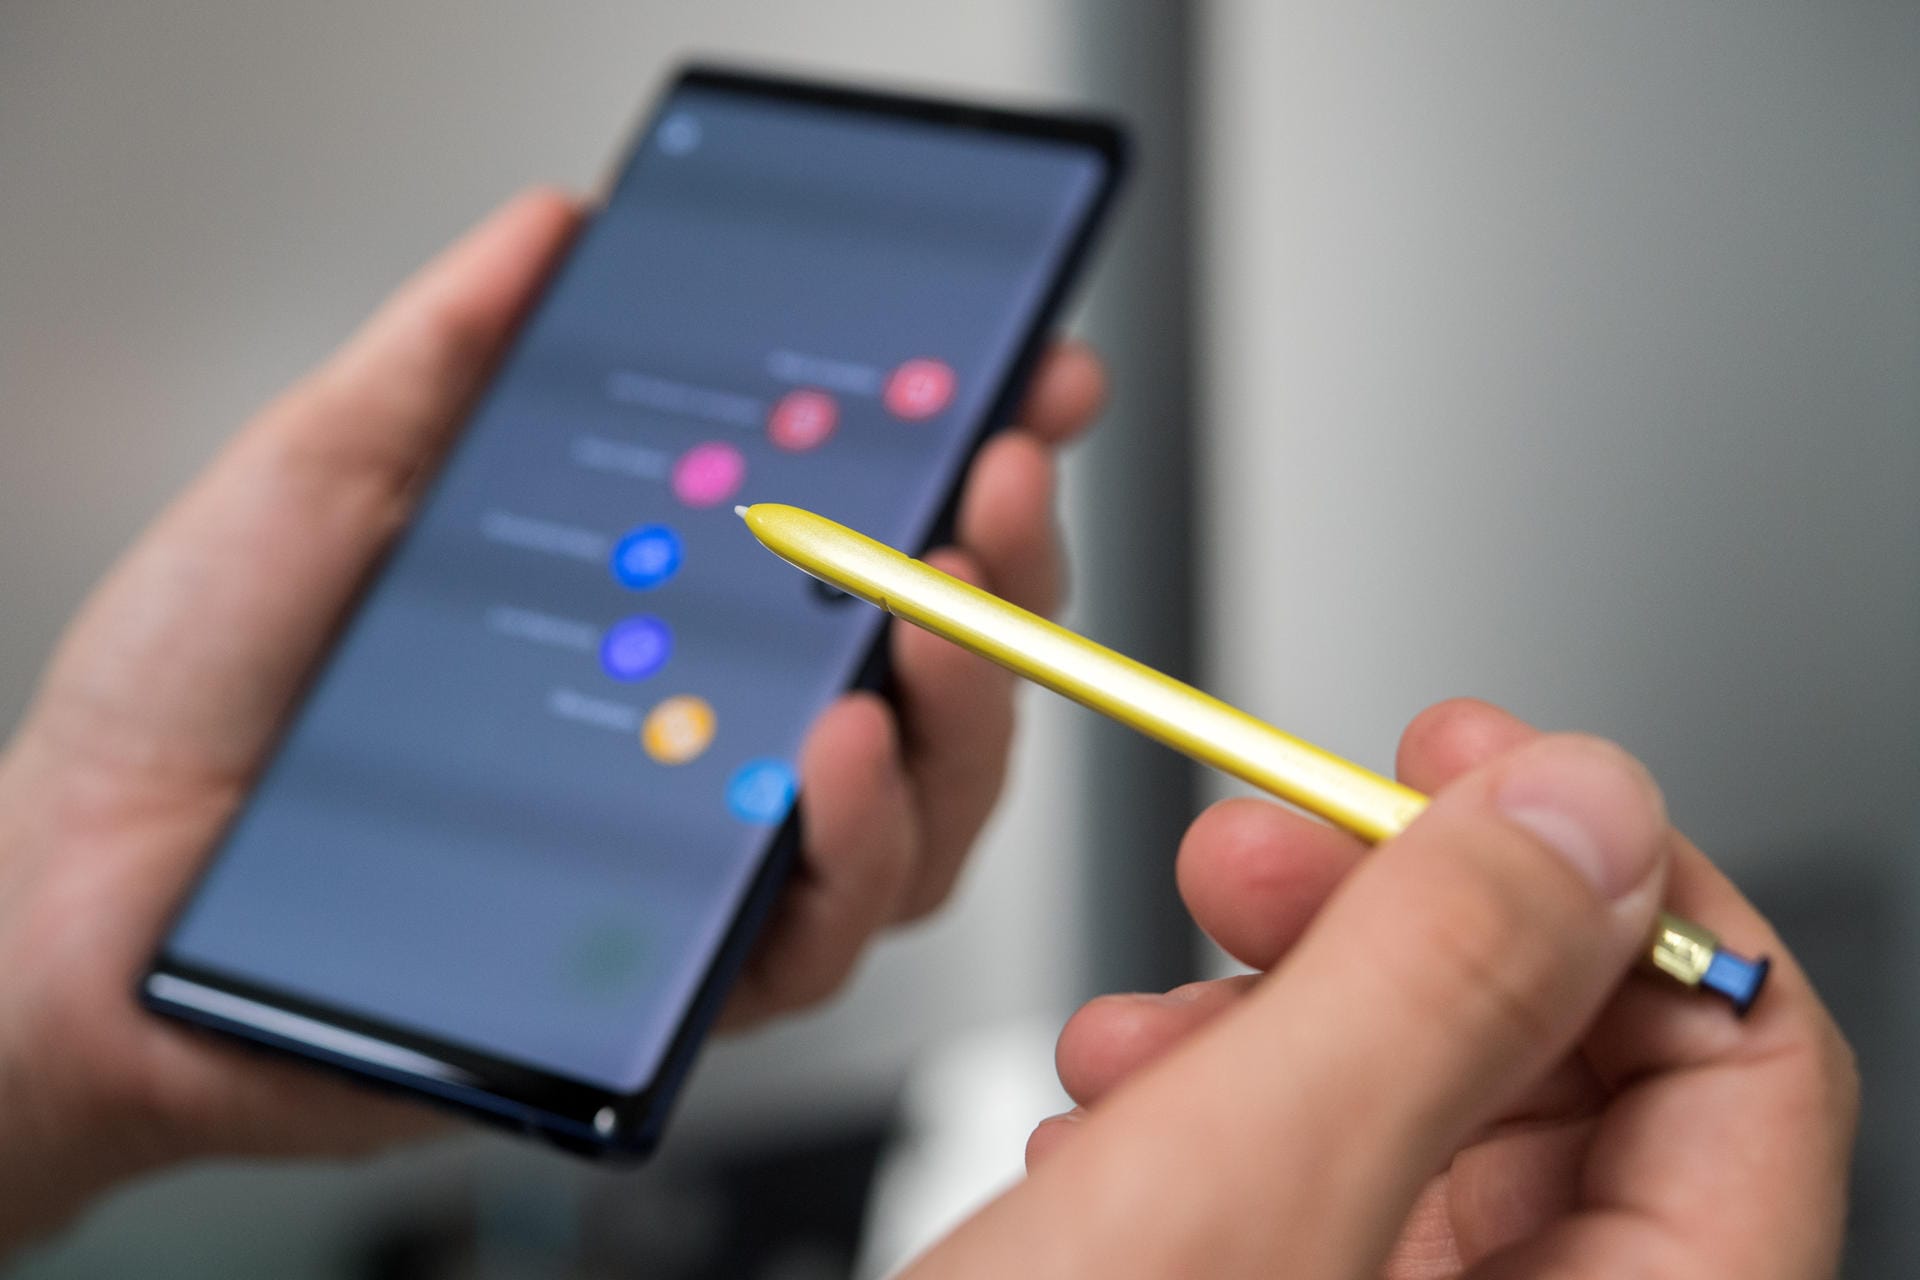 Mehr Lifestyle, mehr Funktionen: Den Bedienstift S Pen gibt es nun auch in einer vom Smartphone abgesetzten Farbe und kann auch als Fernbedienung für Präsentationen oder als Auslöser für die Kamera genutzt werden.